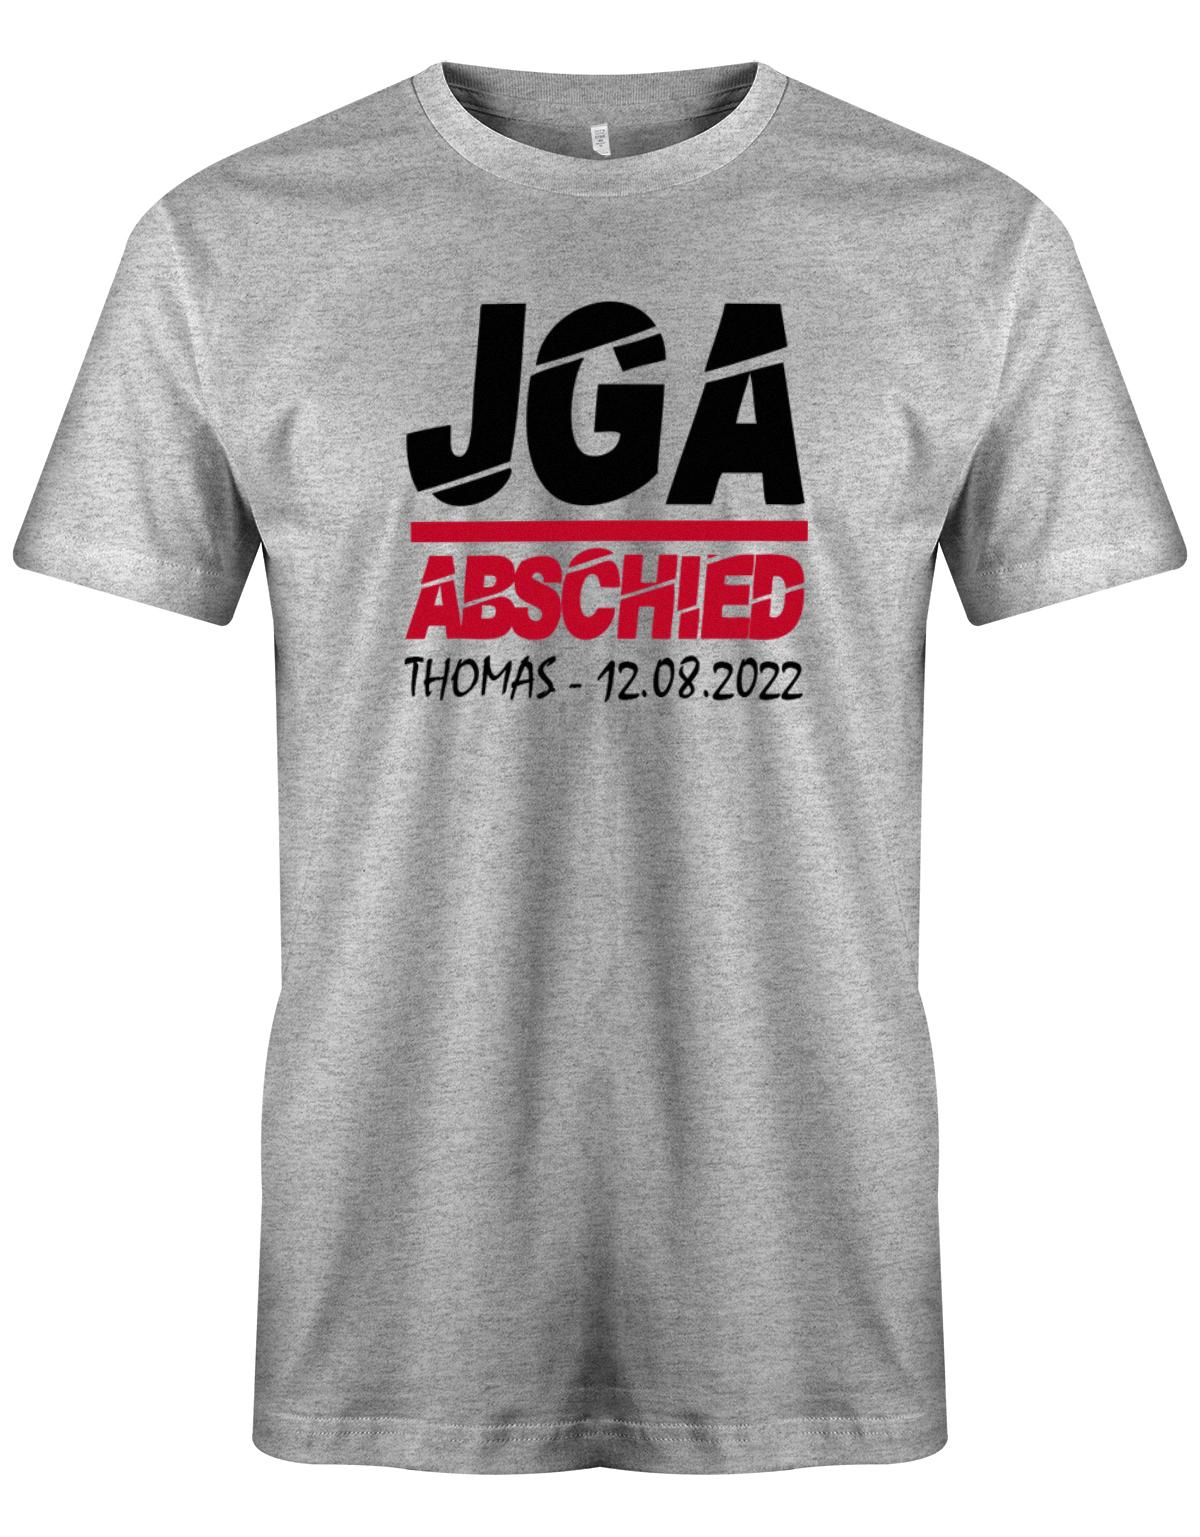 JGA-Abschied-mit-Name-und-Datum-Herren-Shirt-Grau